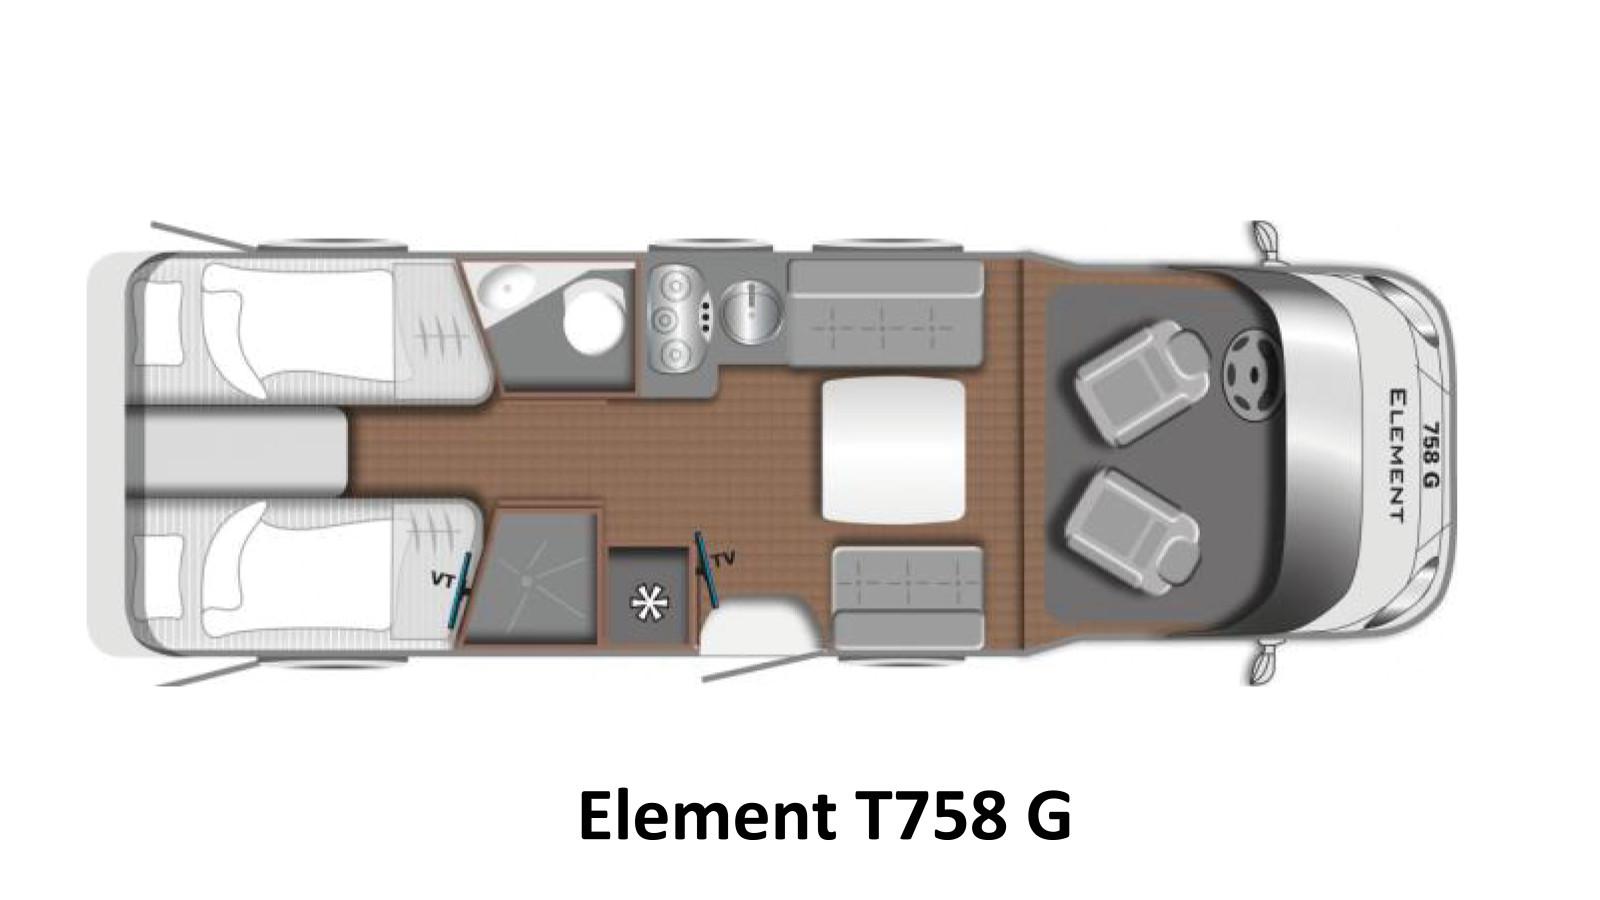 LMC - Element T 758 G interior